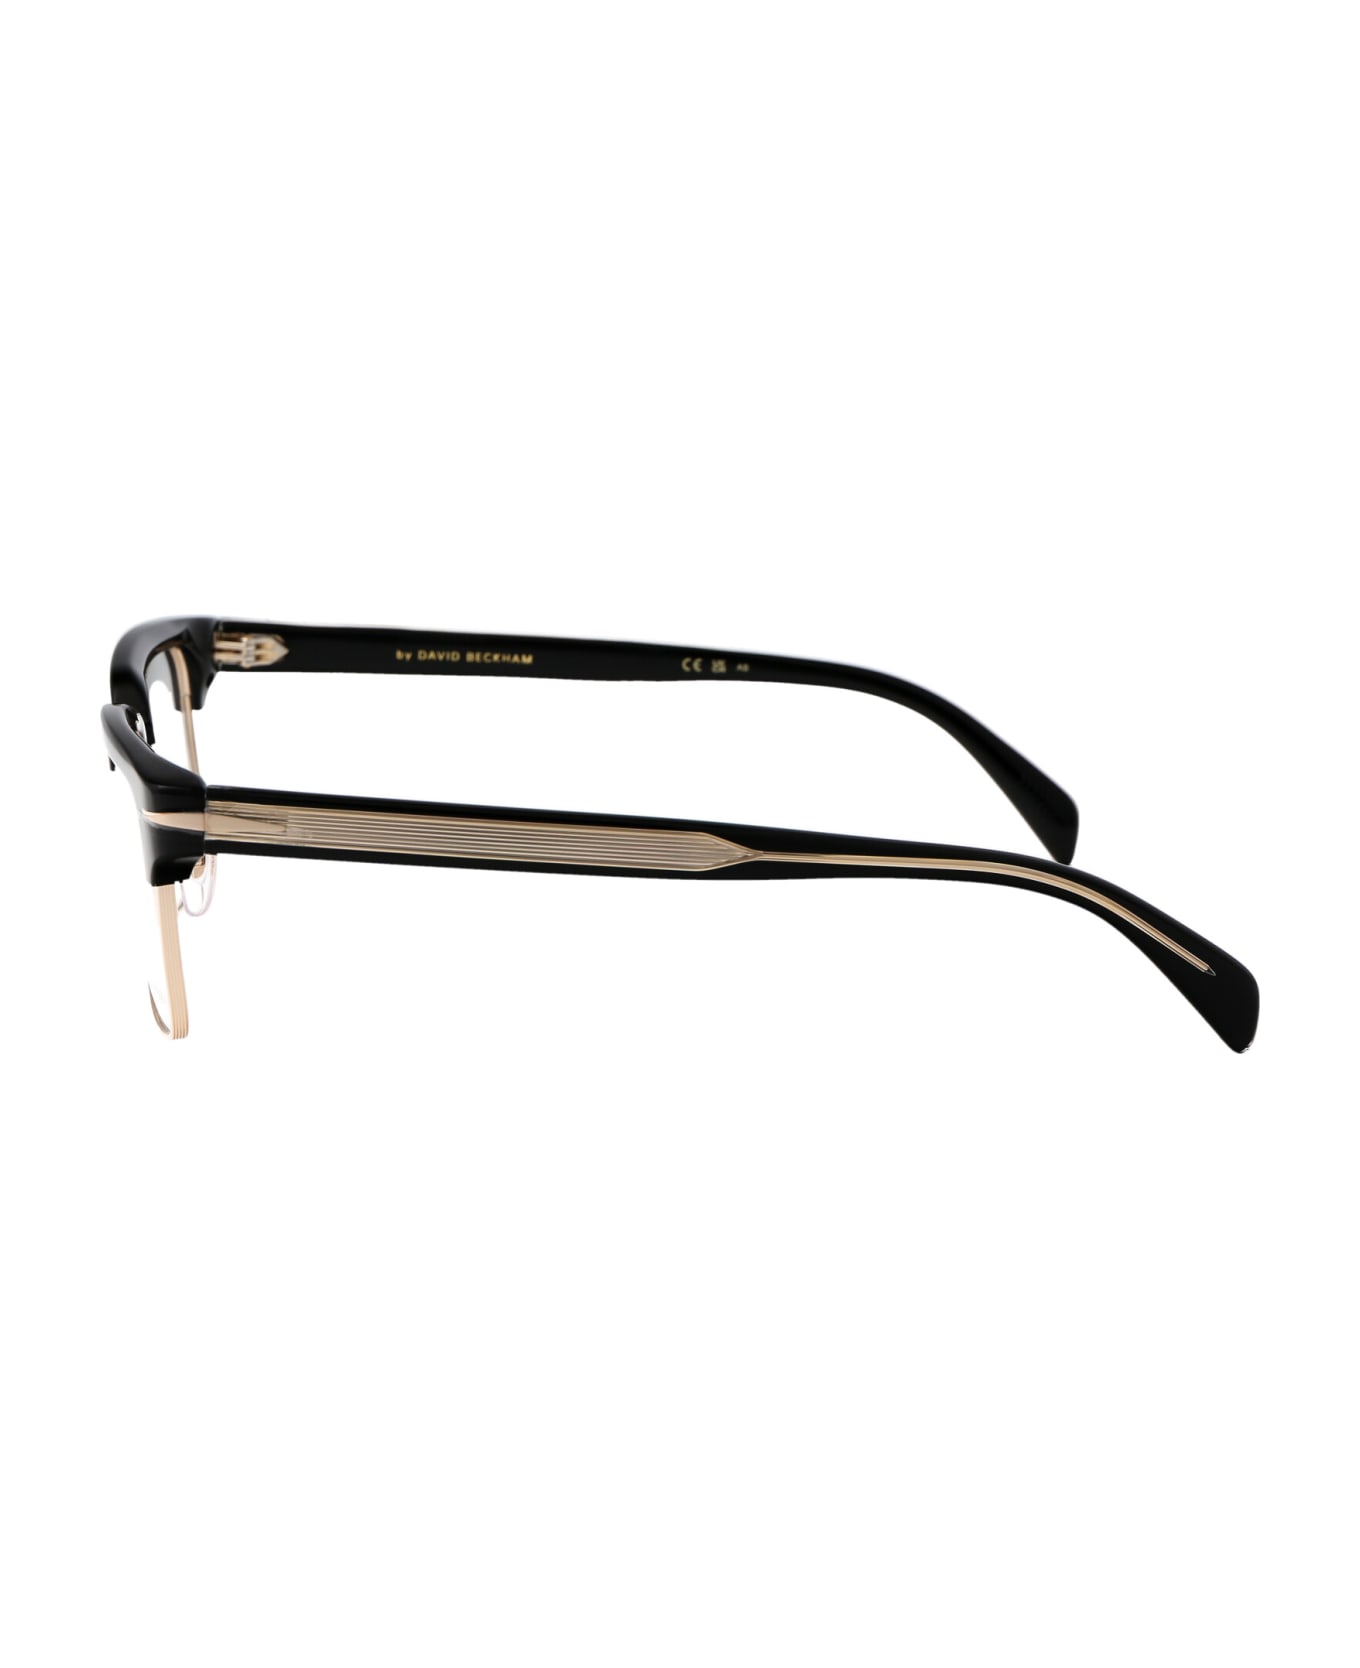 DB Eyewear by David Beckham Db 7112 Glasses - 2M2 BLACK GOLD アイウェア